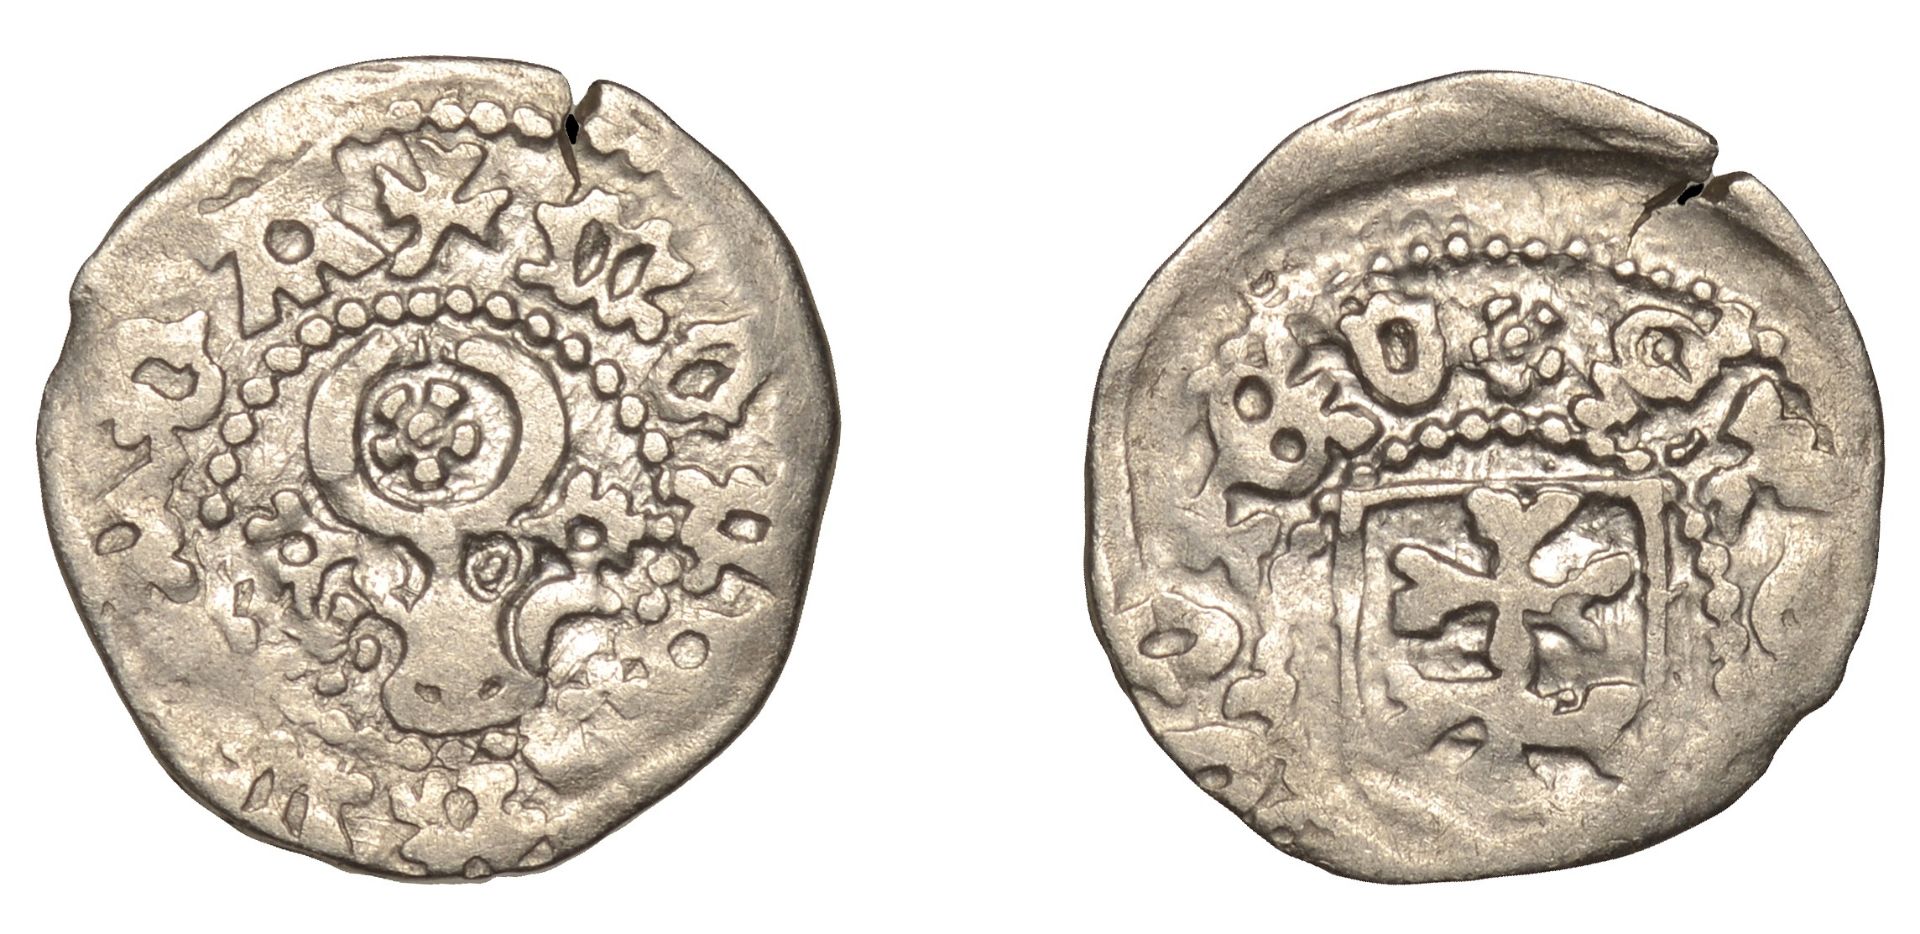 Romania, MOLDAVIA, Stefan cel Mare (1457-1504), Gros, type IIc, moneta molda, rev. ste[-----...